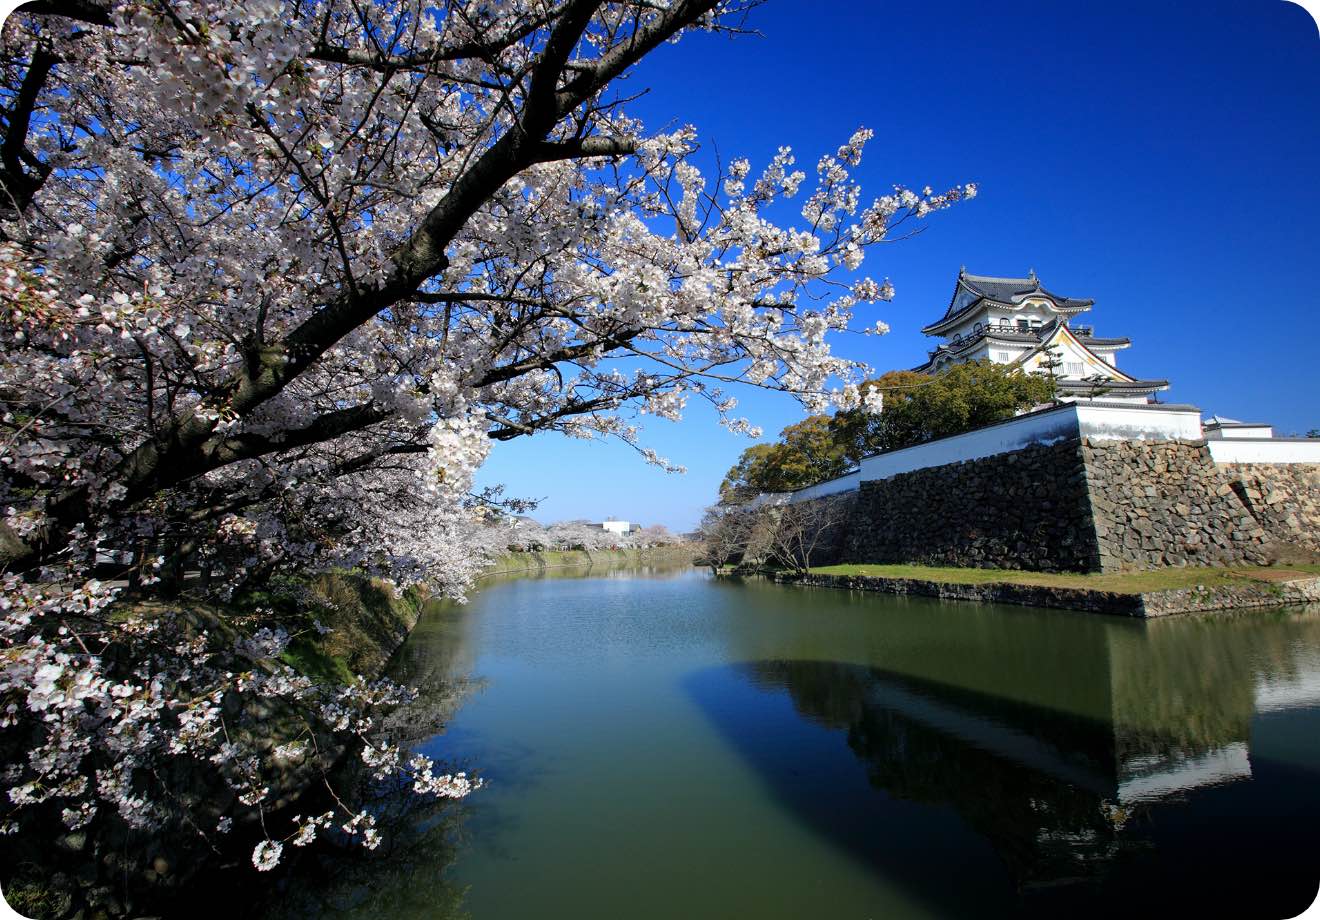 센슈에 살아숨쉬는 오사카의 자연과 역사 蜻蛉池公園